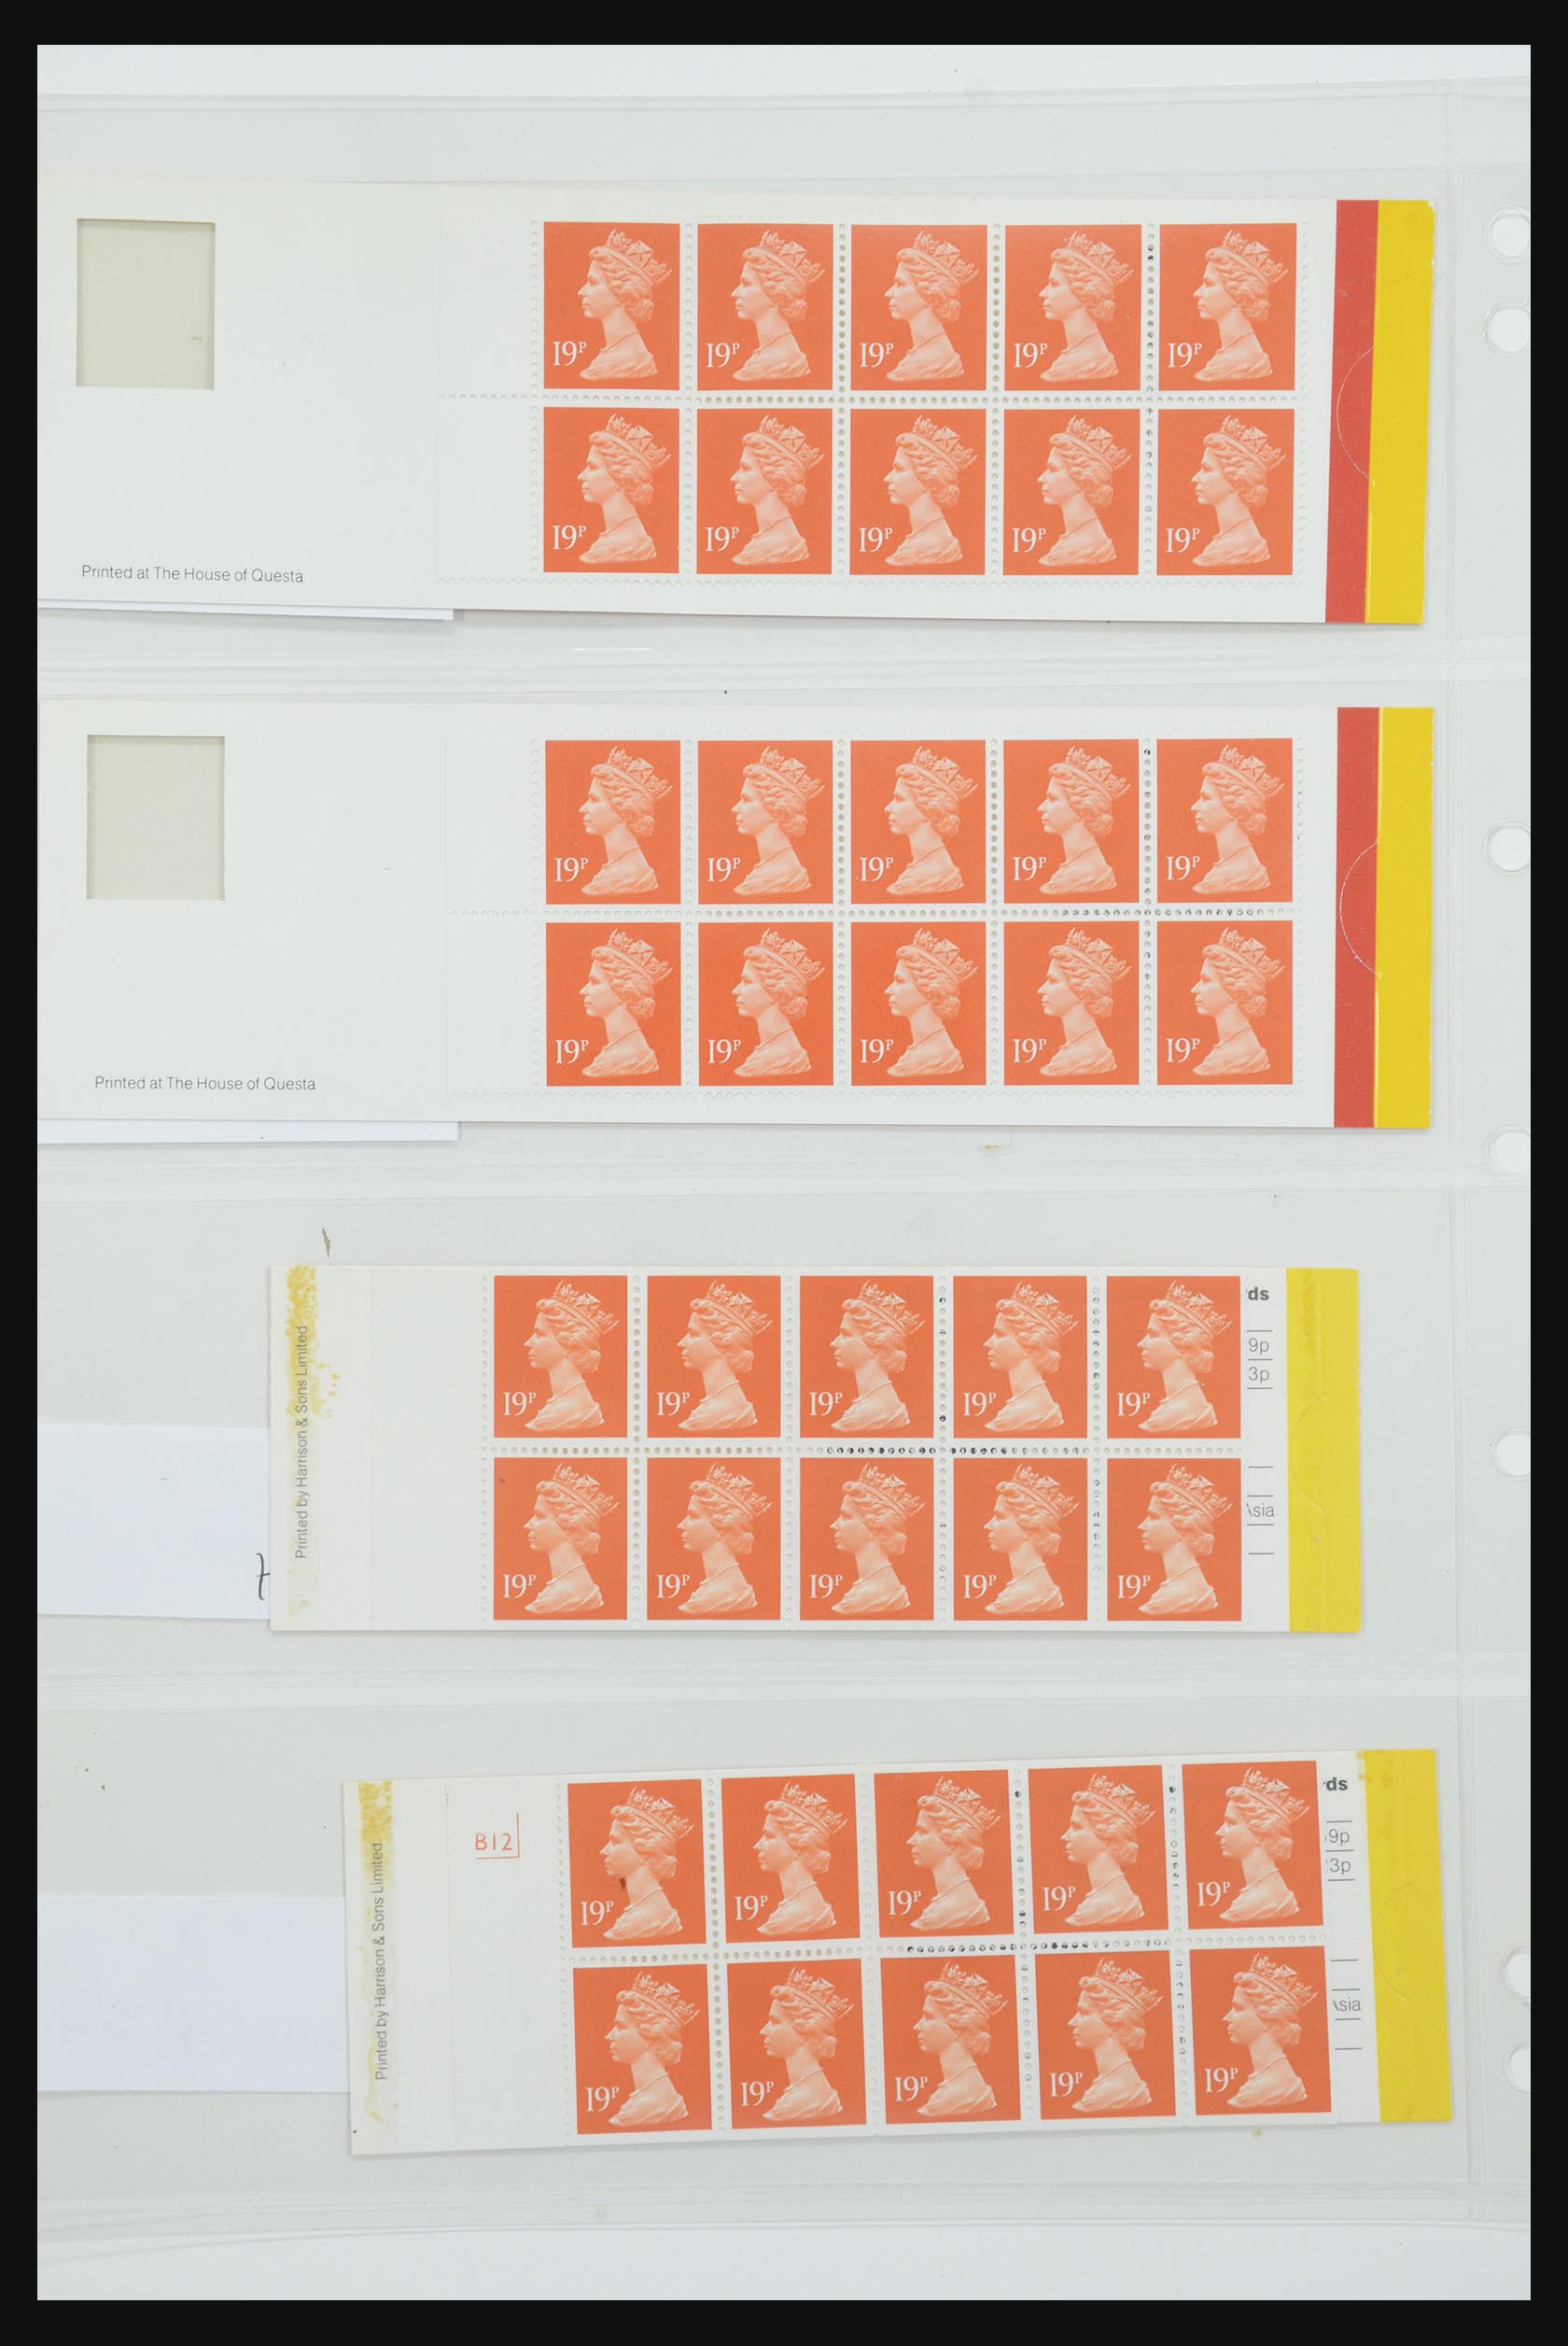 31959 072 - 31959 Engeland postzegelboekjes 1987-2016!!